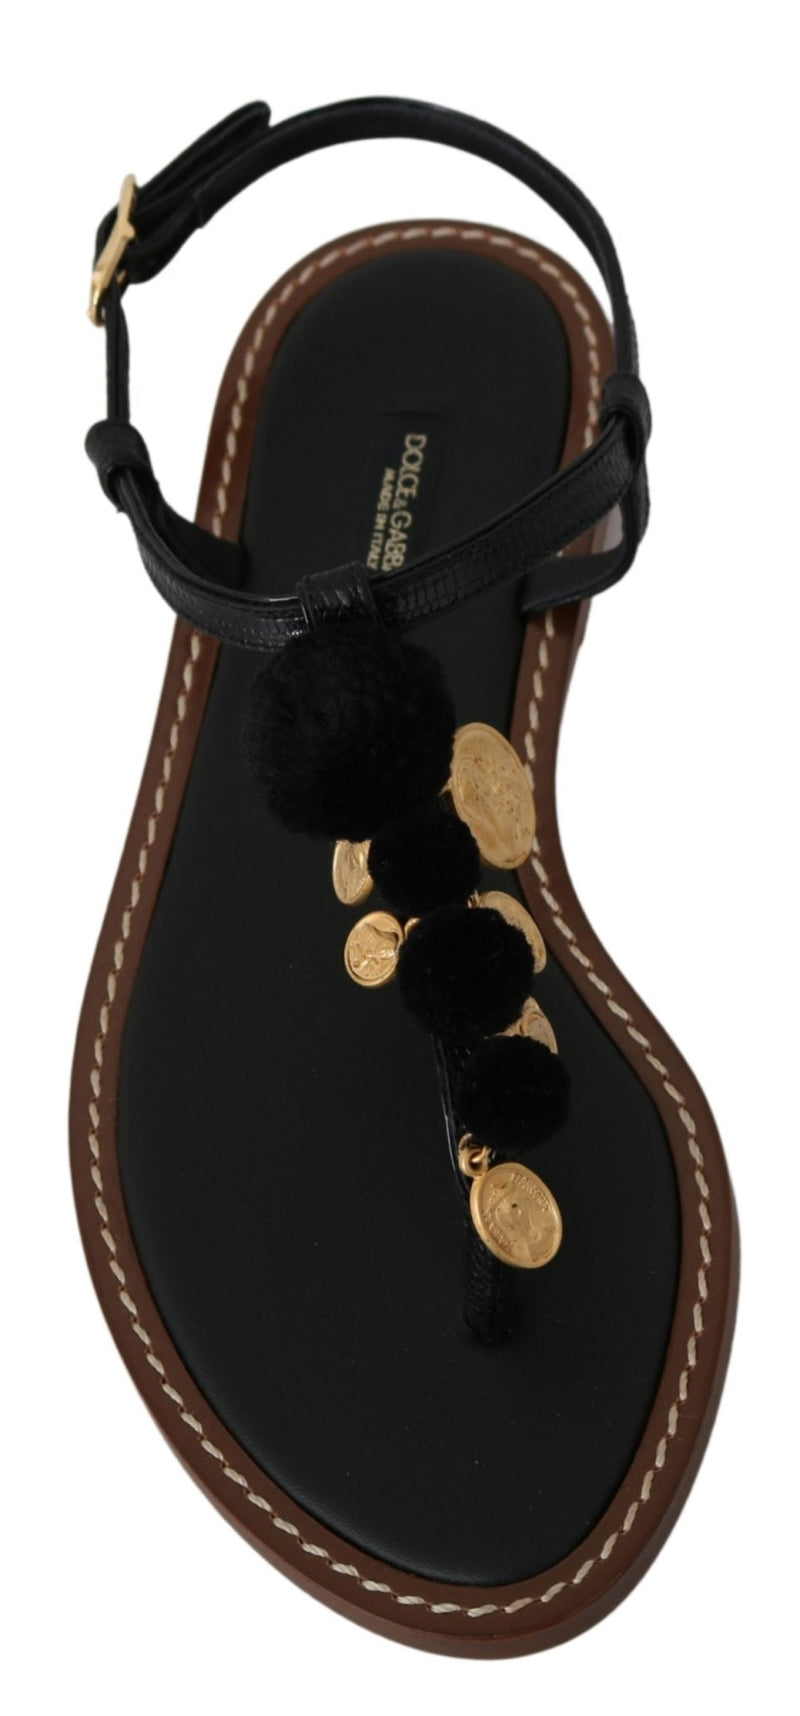 Black Leather Coins Flip Flops Sandals Shoes - Avaz Shop